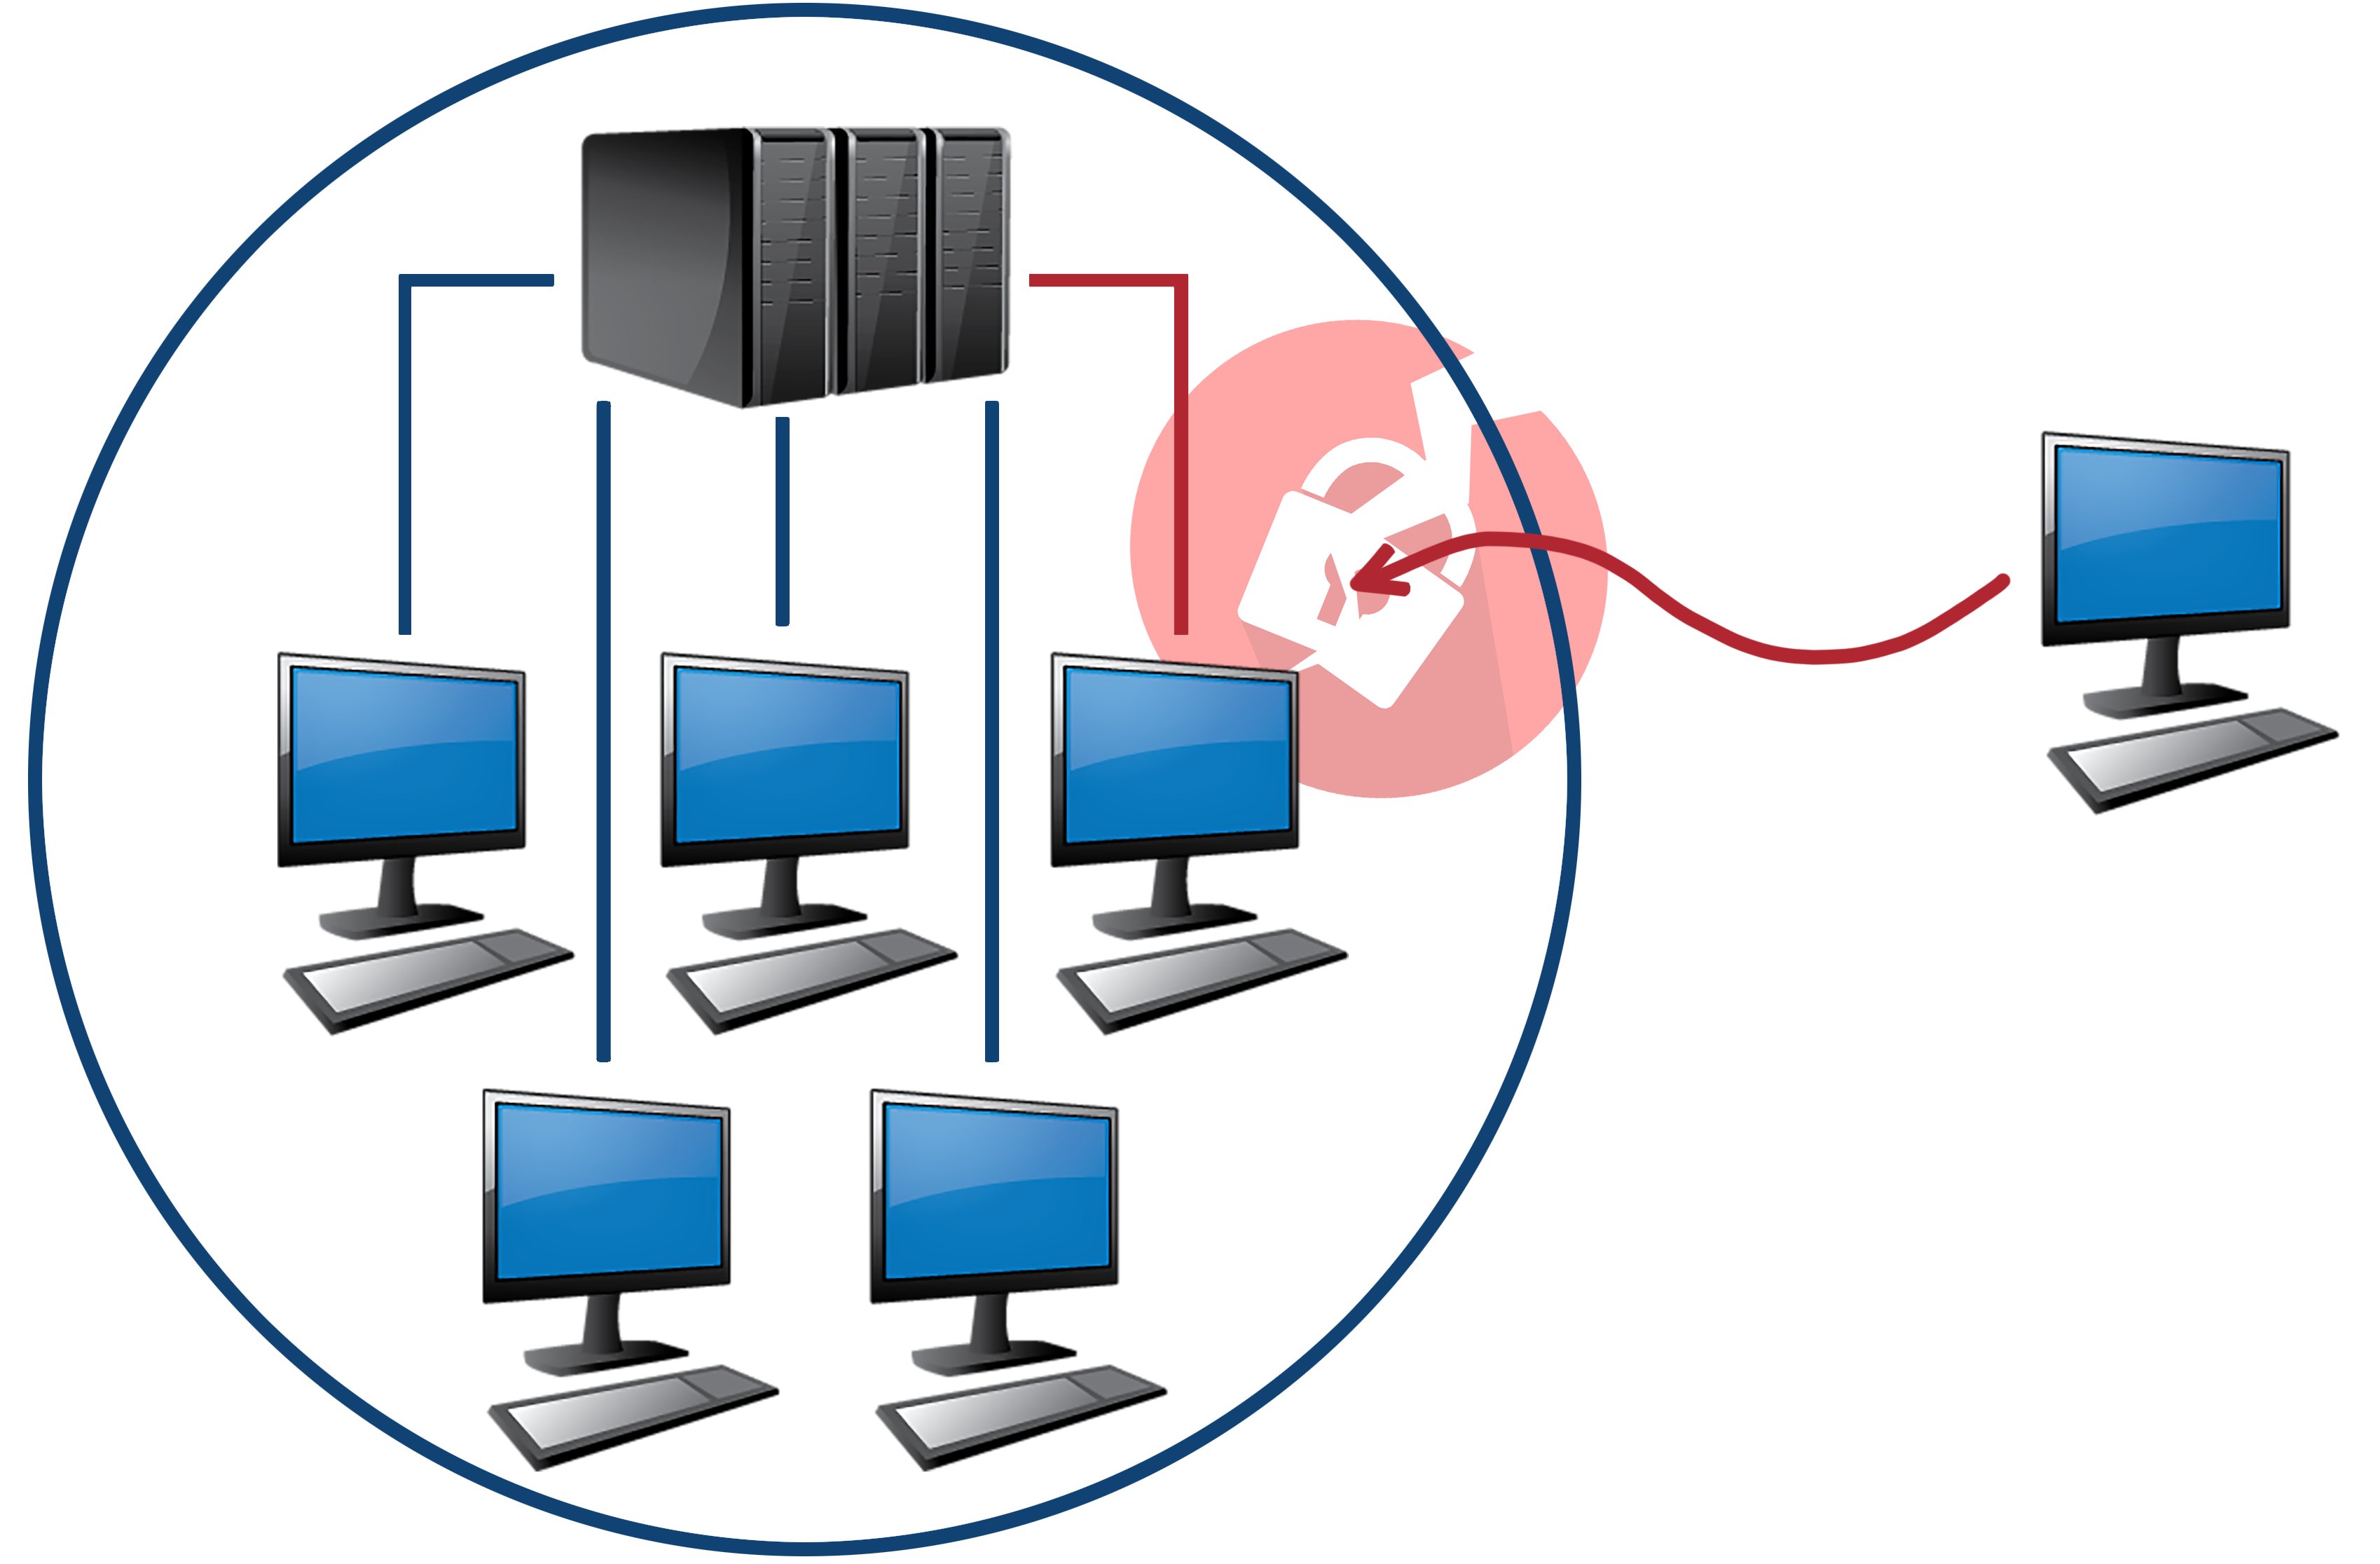 Grafika - prikazuje privatno računalo Van sustava organizacije, neobuhvaćeno sigurnosnim mjerama tvrtke, koje ima pristup poslovnim podacima. Takvo računalo predstavlja veliki sigurnosni rizik i mogućnost upada u sustav putem njega.